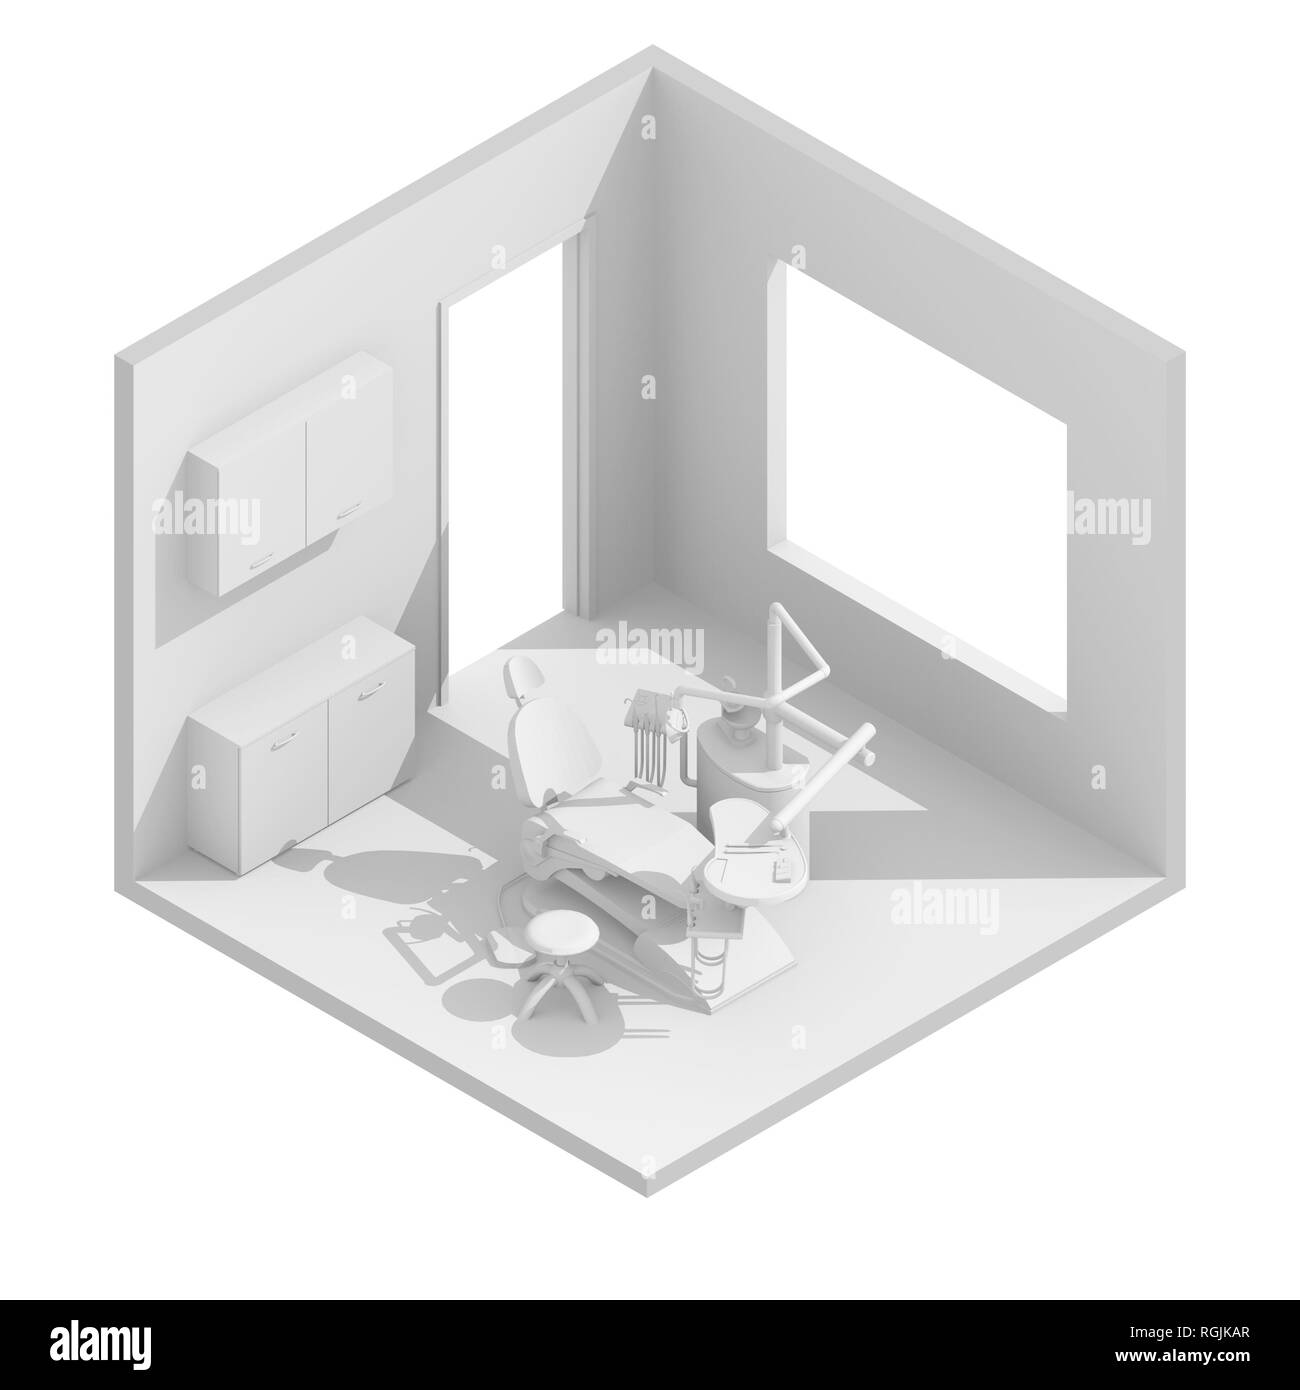 3d isometric rendering illustration of white dental chair room Stock Photo